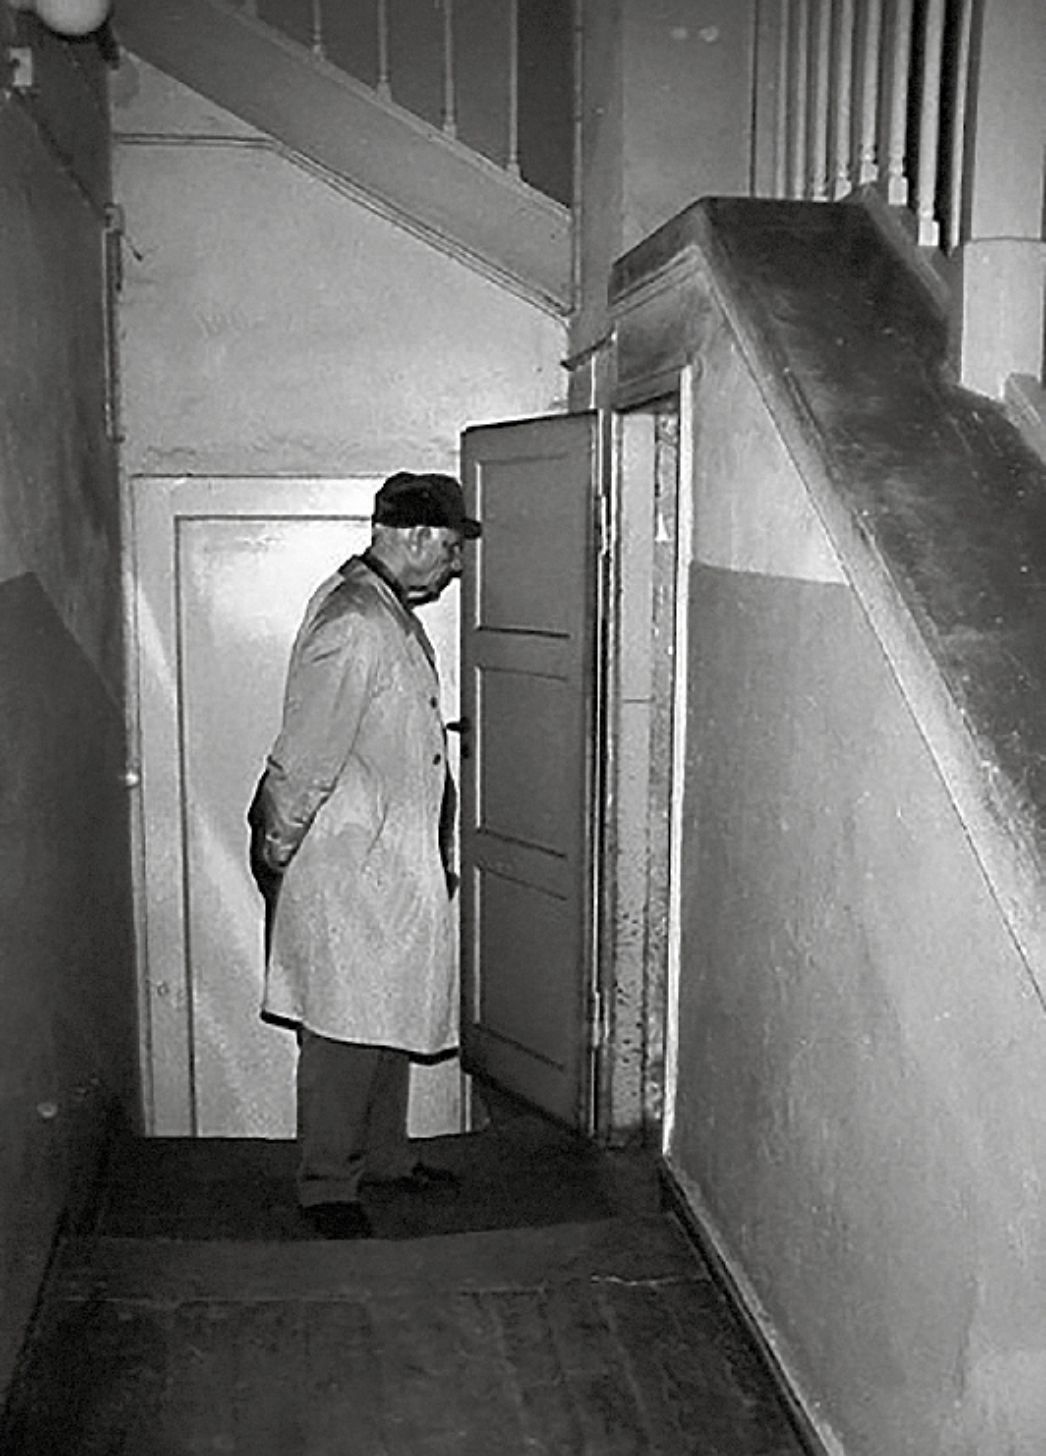 Schwarz-Weiß-Foto von Agafonow im ehemaligen Gestapo-Gefängnis Marstall, vor einer geöffneten Tür stehend